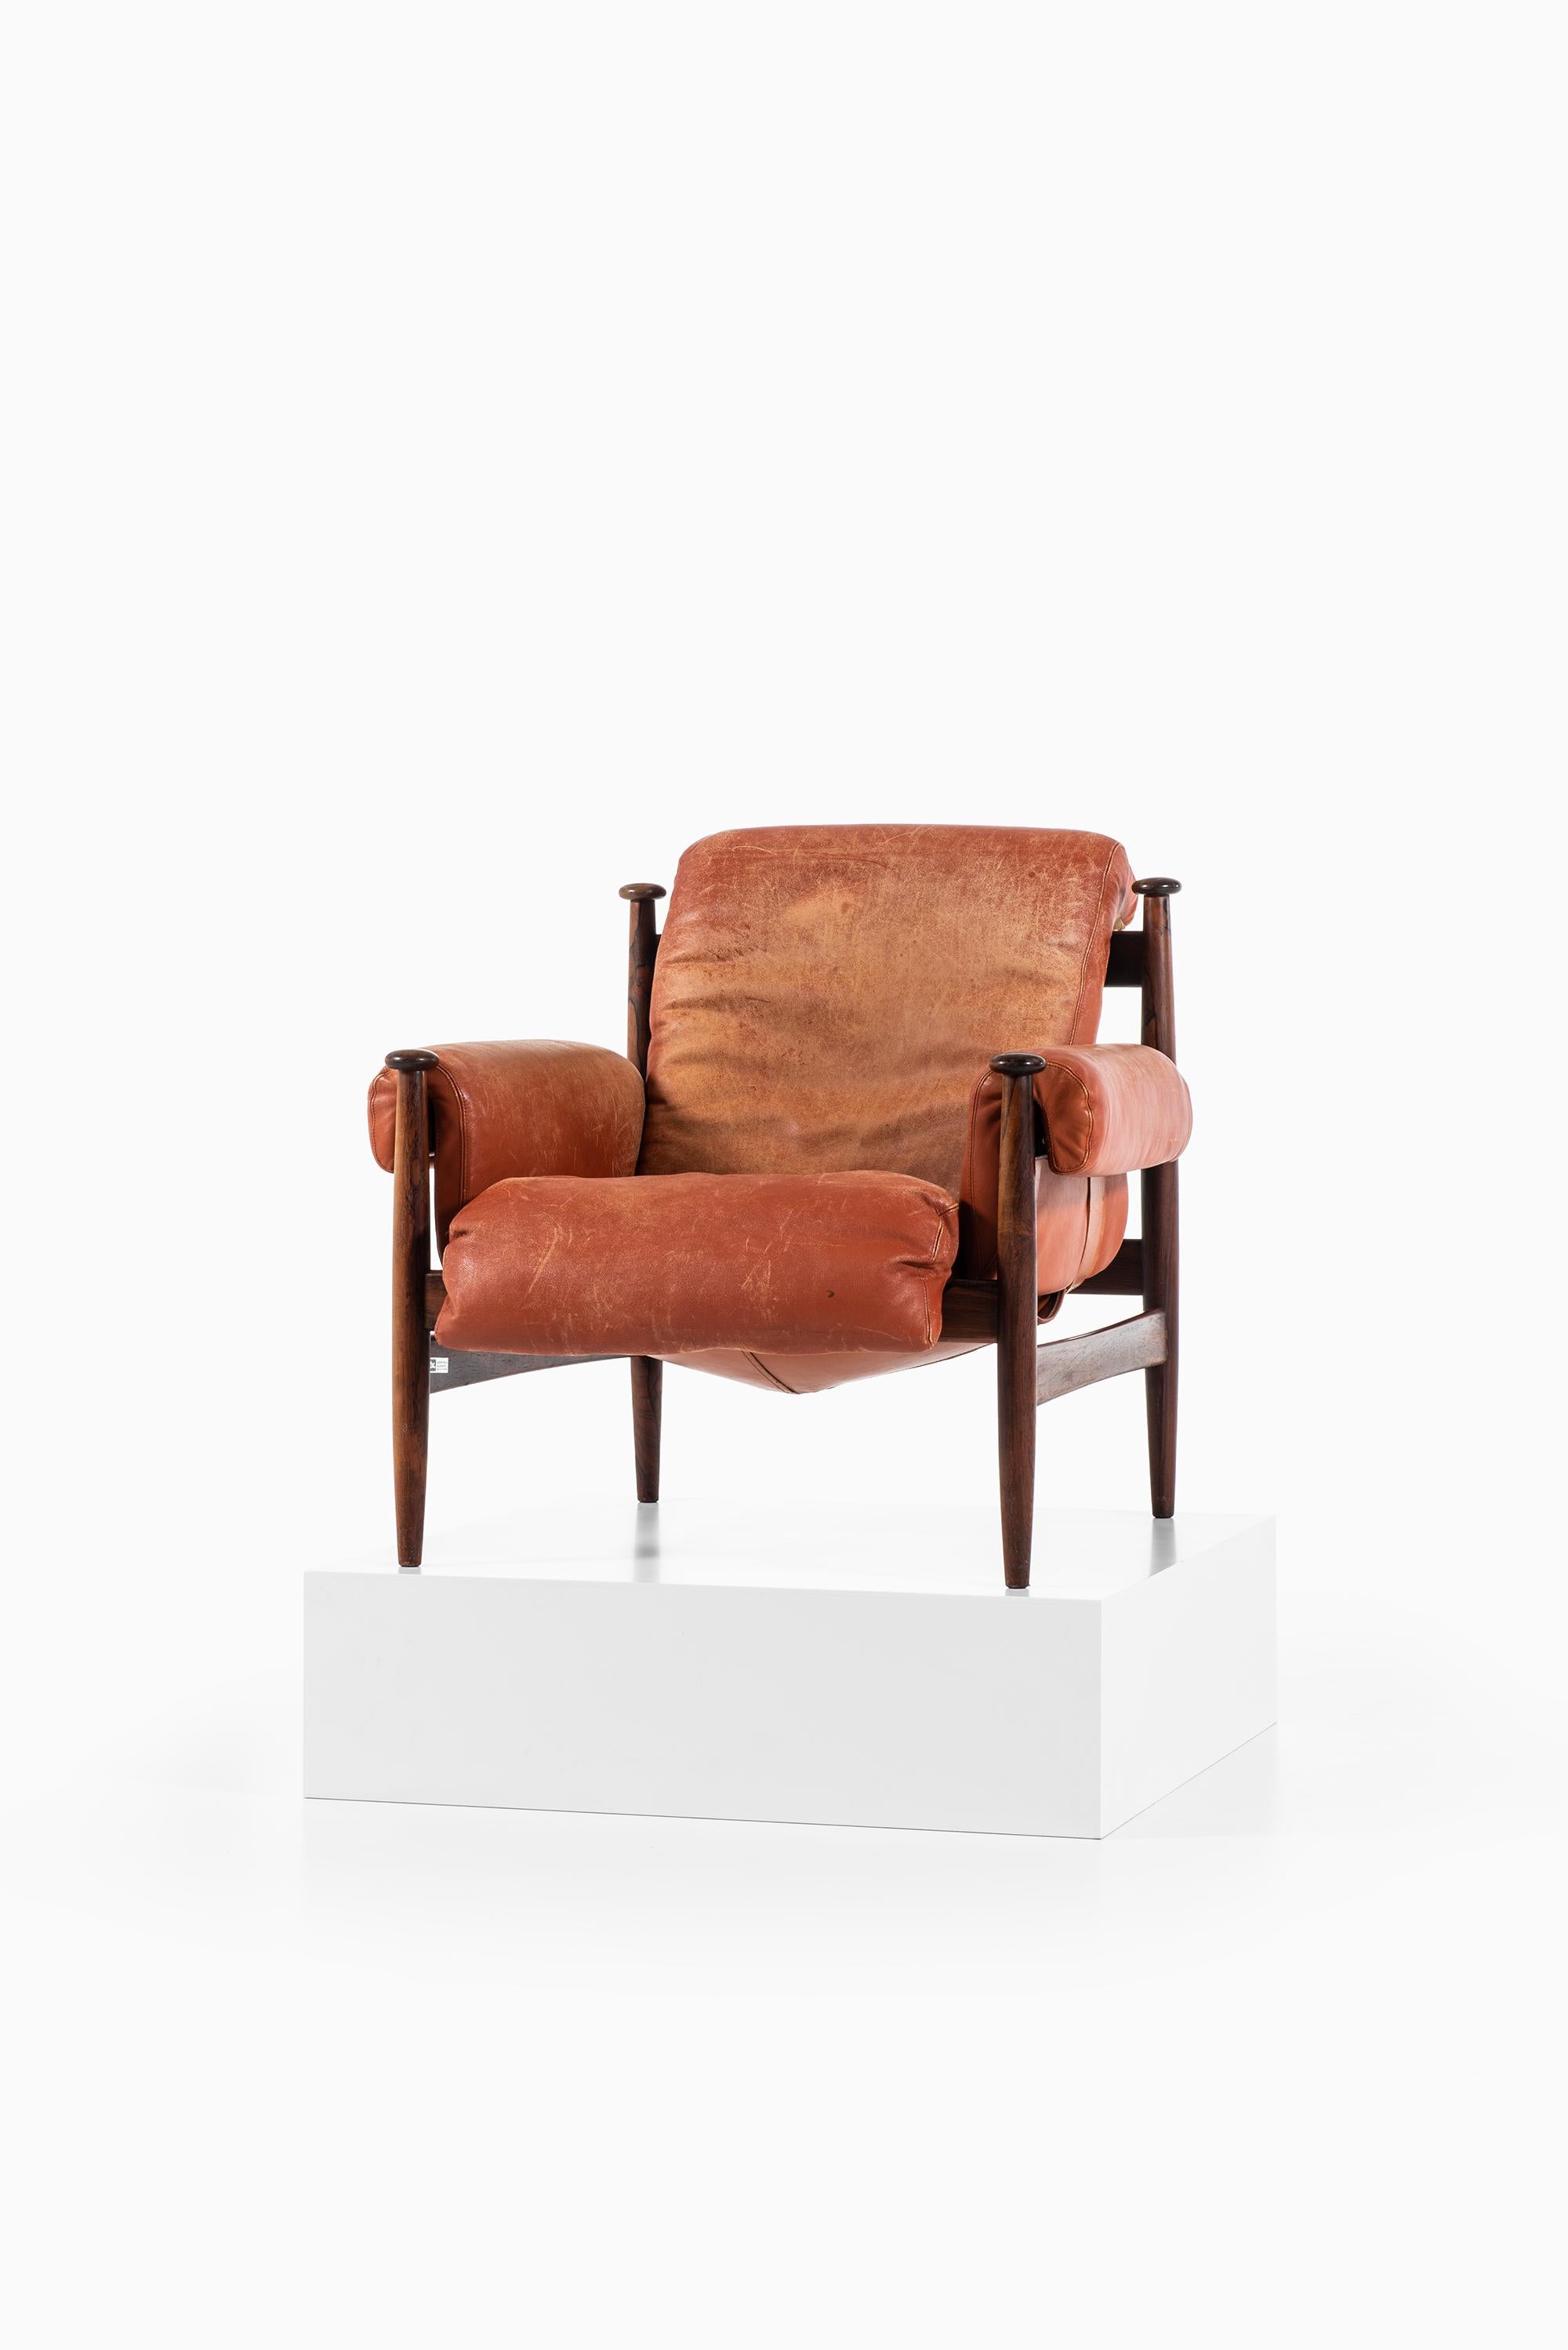 Eric Merthen Amiral Easy Chair, hergestellt von Ire Mbler in Schweden (Skandinavische Moderne)